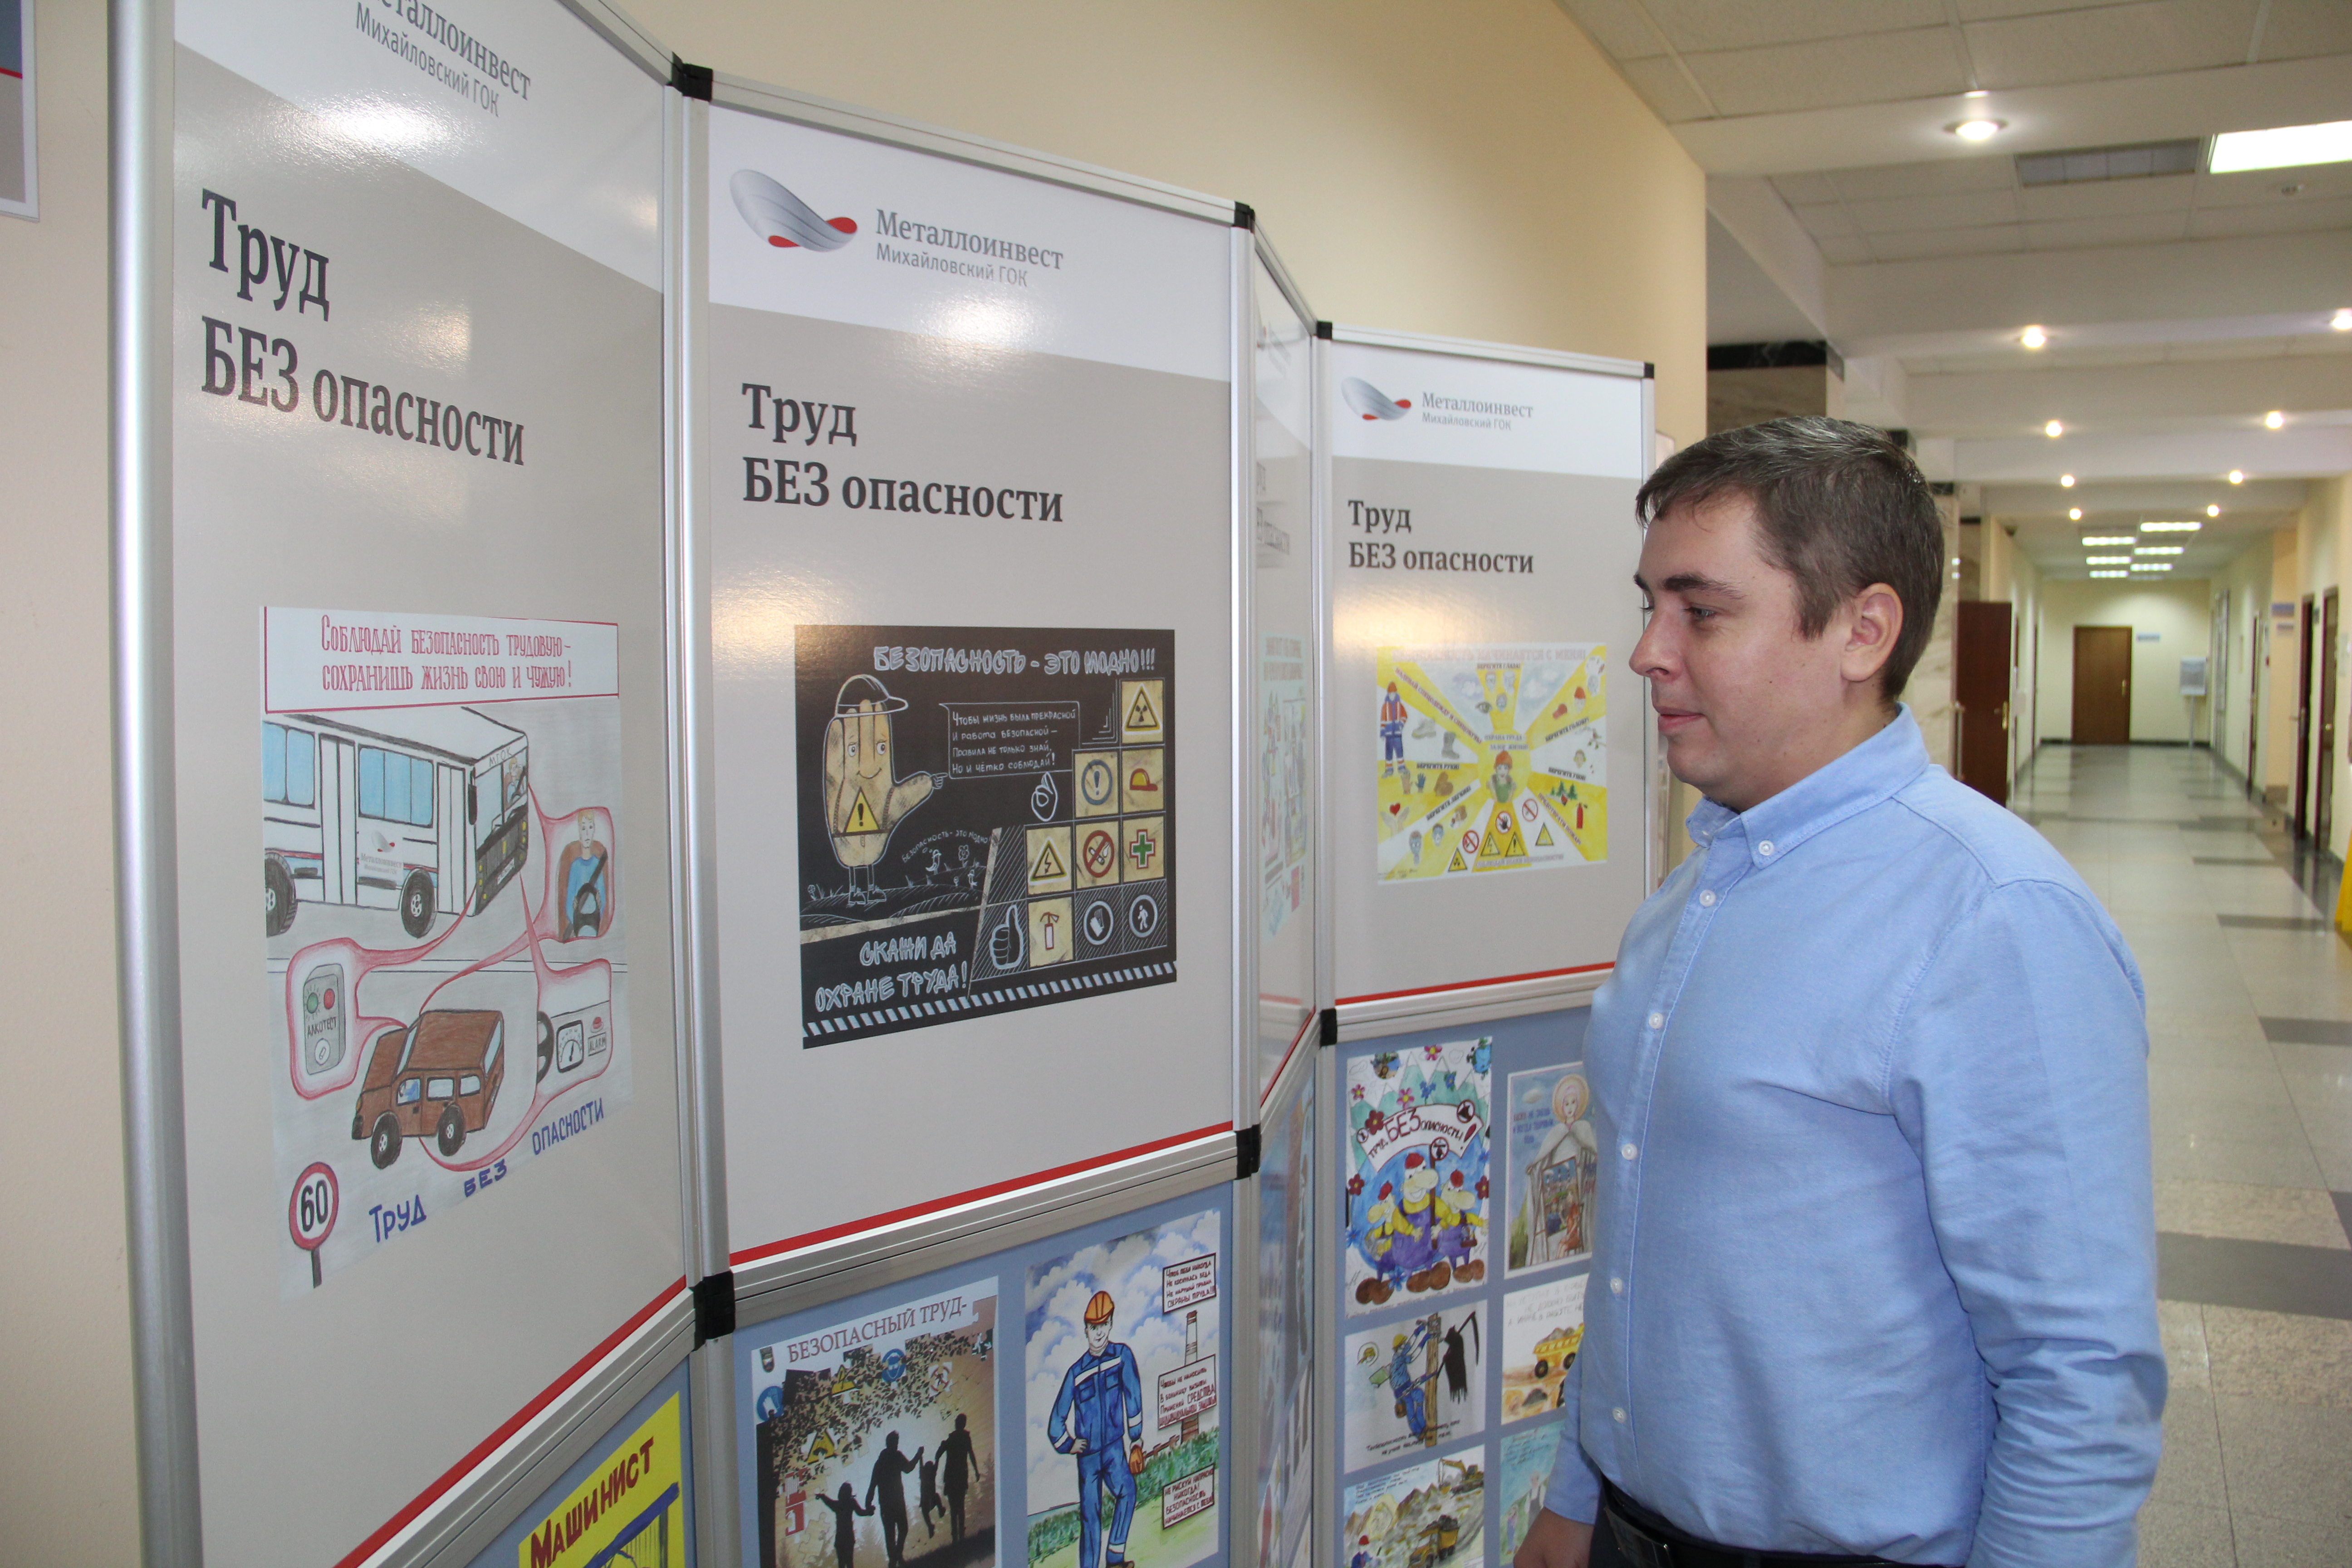 О безопасности напомнят дети: в Железногорске открылась выставка необычных рисунков